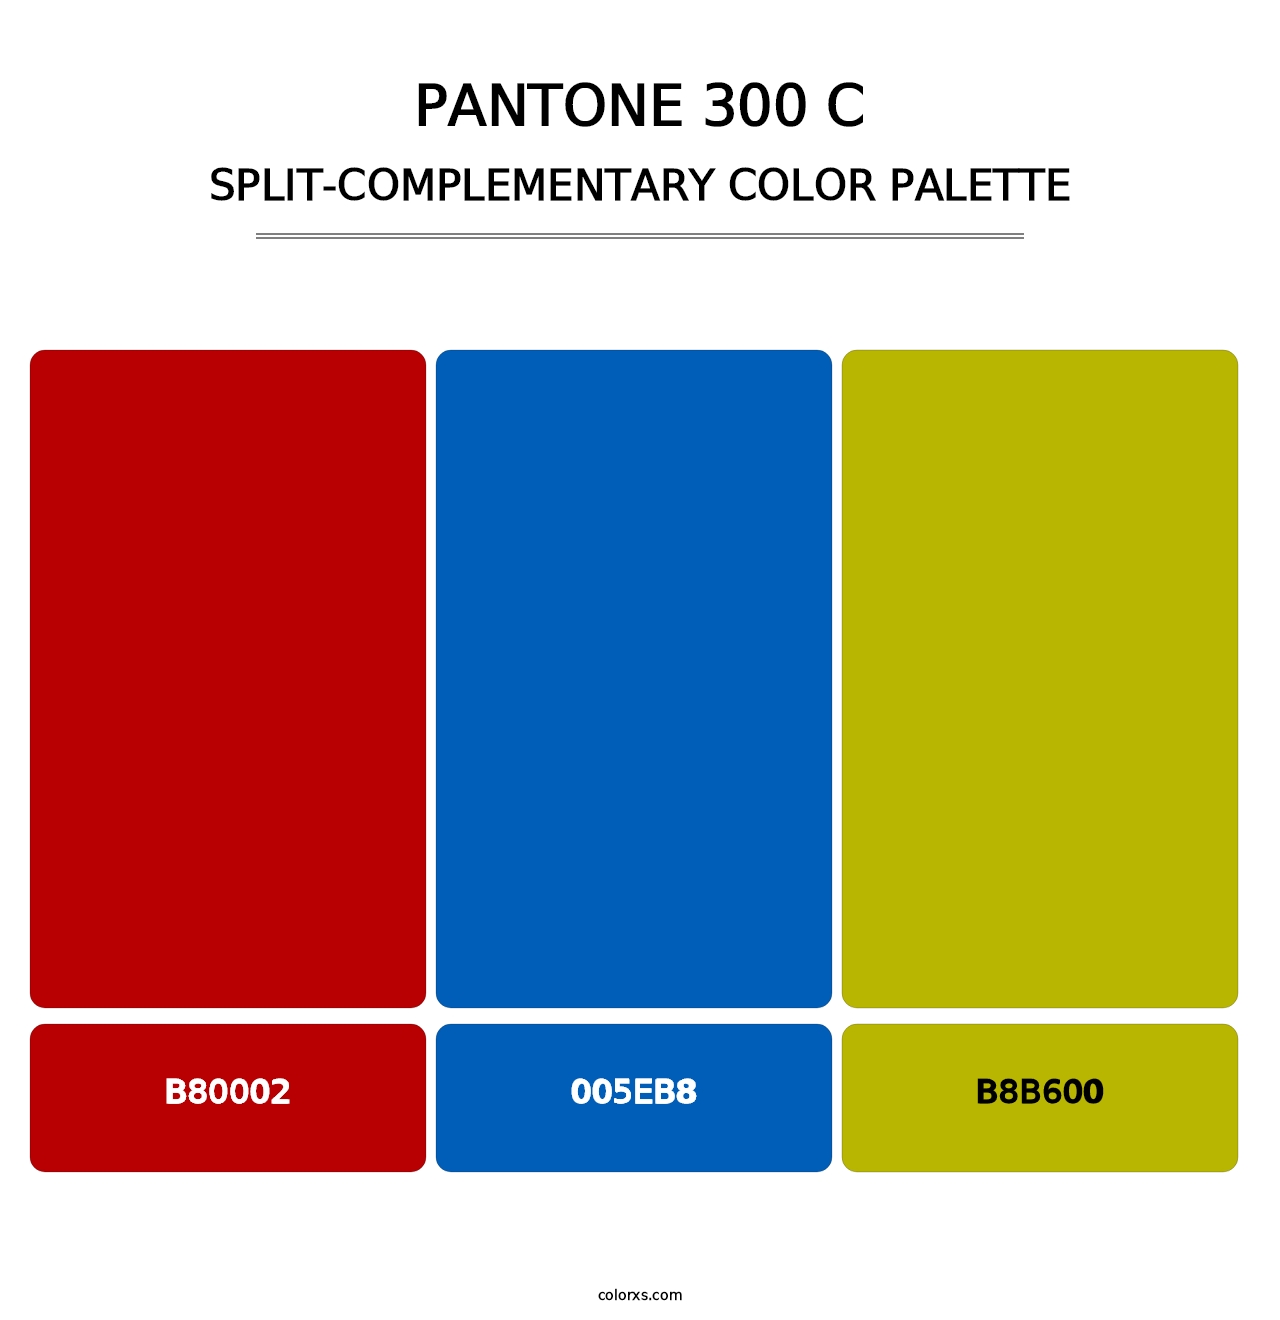 PANTONE 300 C - Split-Complementary Color Palette